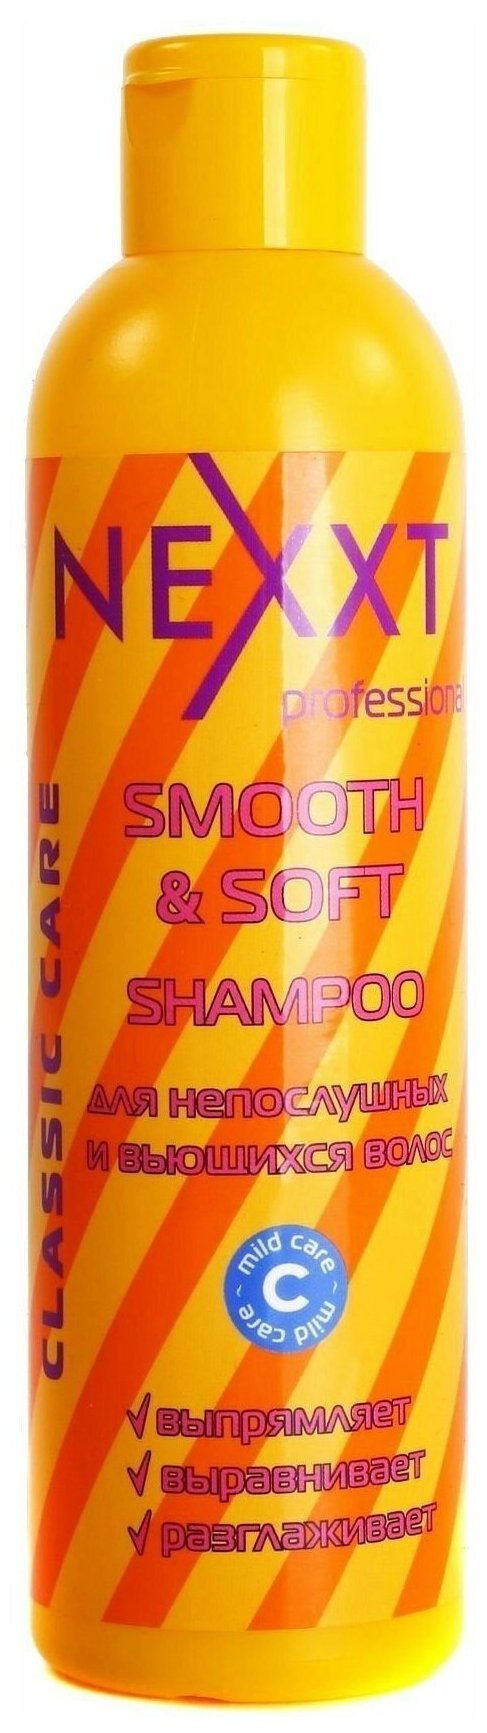 NEXPROF шампунь Professional Classic Сare Smooth & Soft для непослушных, капризных и вьющихся волос, 250 мл